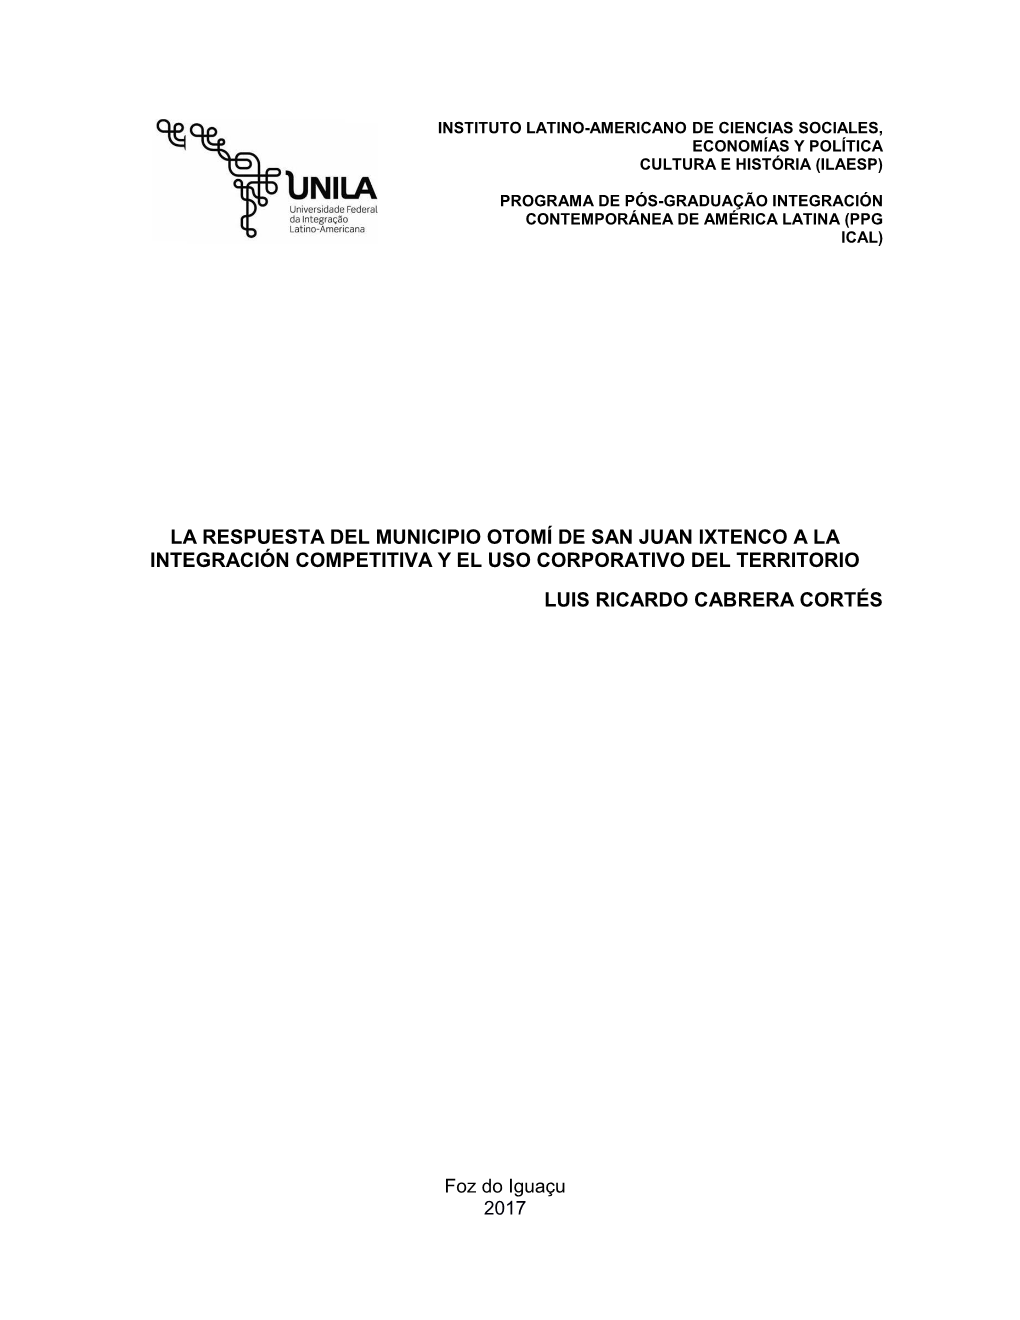 La Respuesta Del Municipio Otomí De San Juan Ixtenco a La Integración Competitiva Y El Uso Corporativo Del Territorio Luis Ricardo Cabrera Cortés